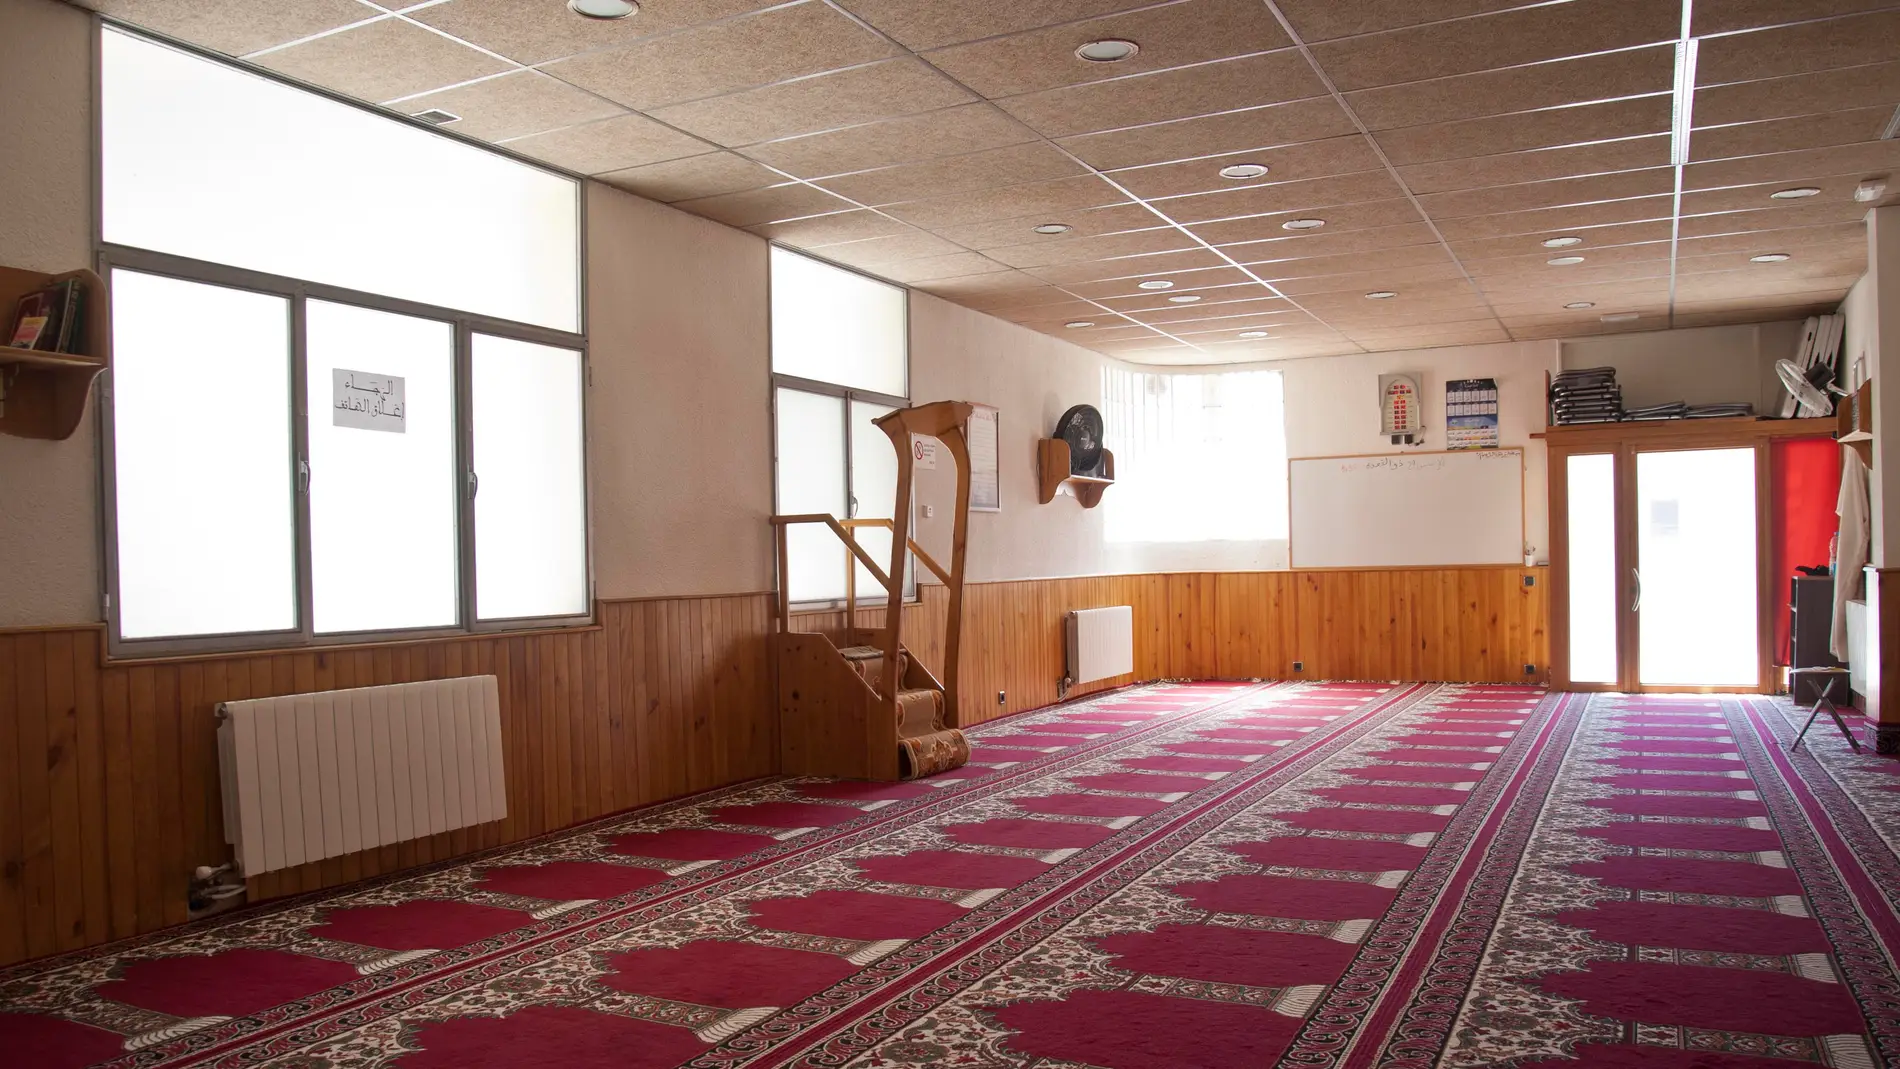 Foto de archivo del interior de una mezquita.